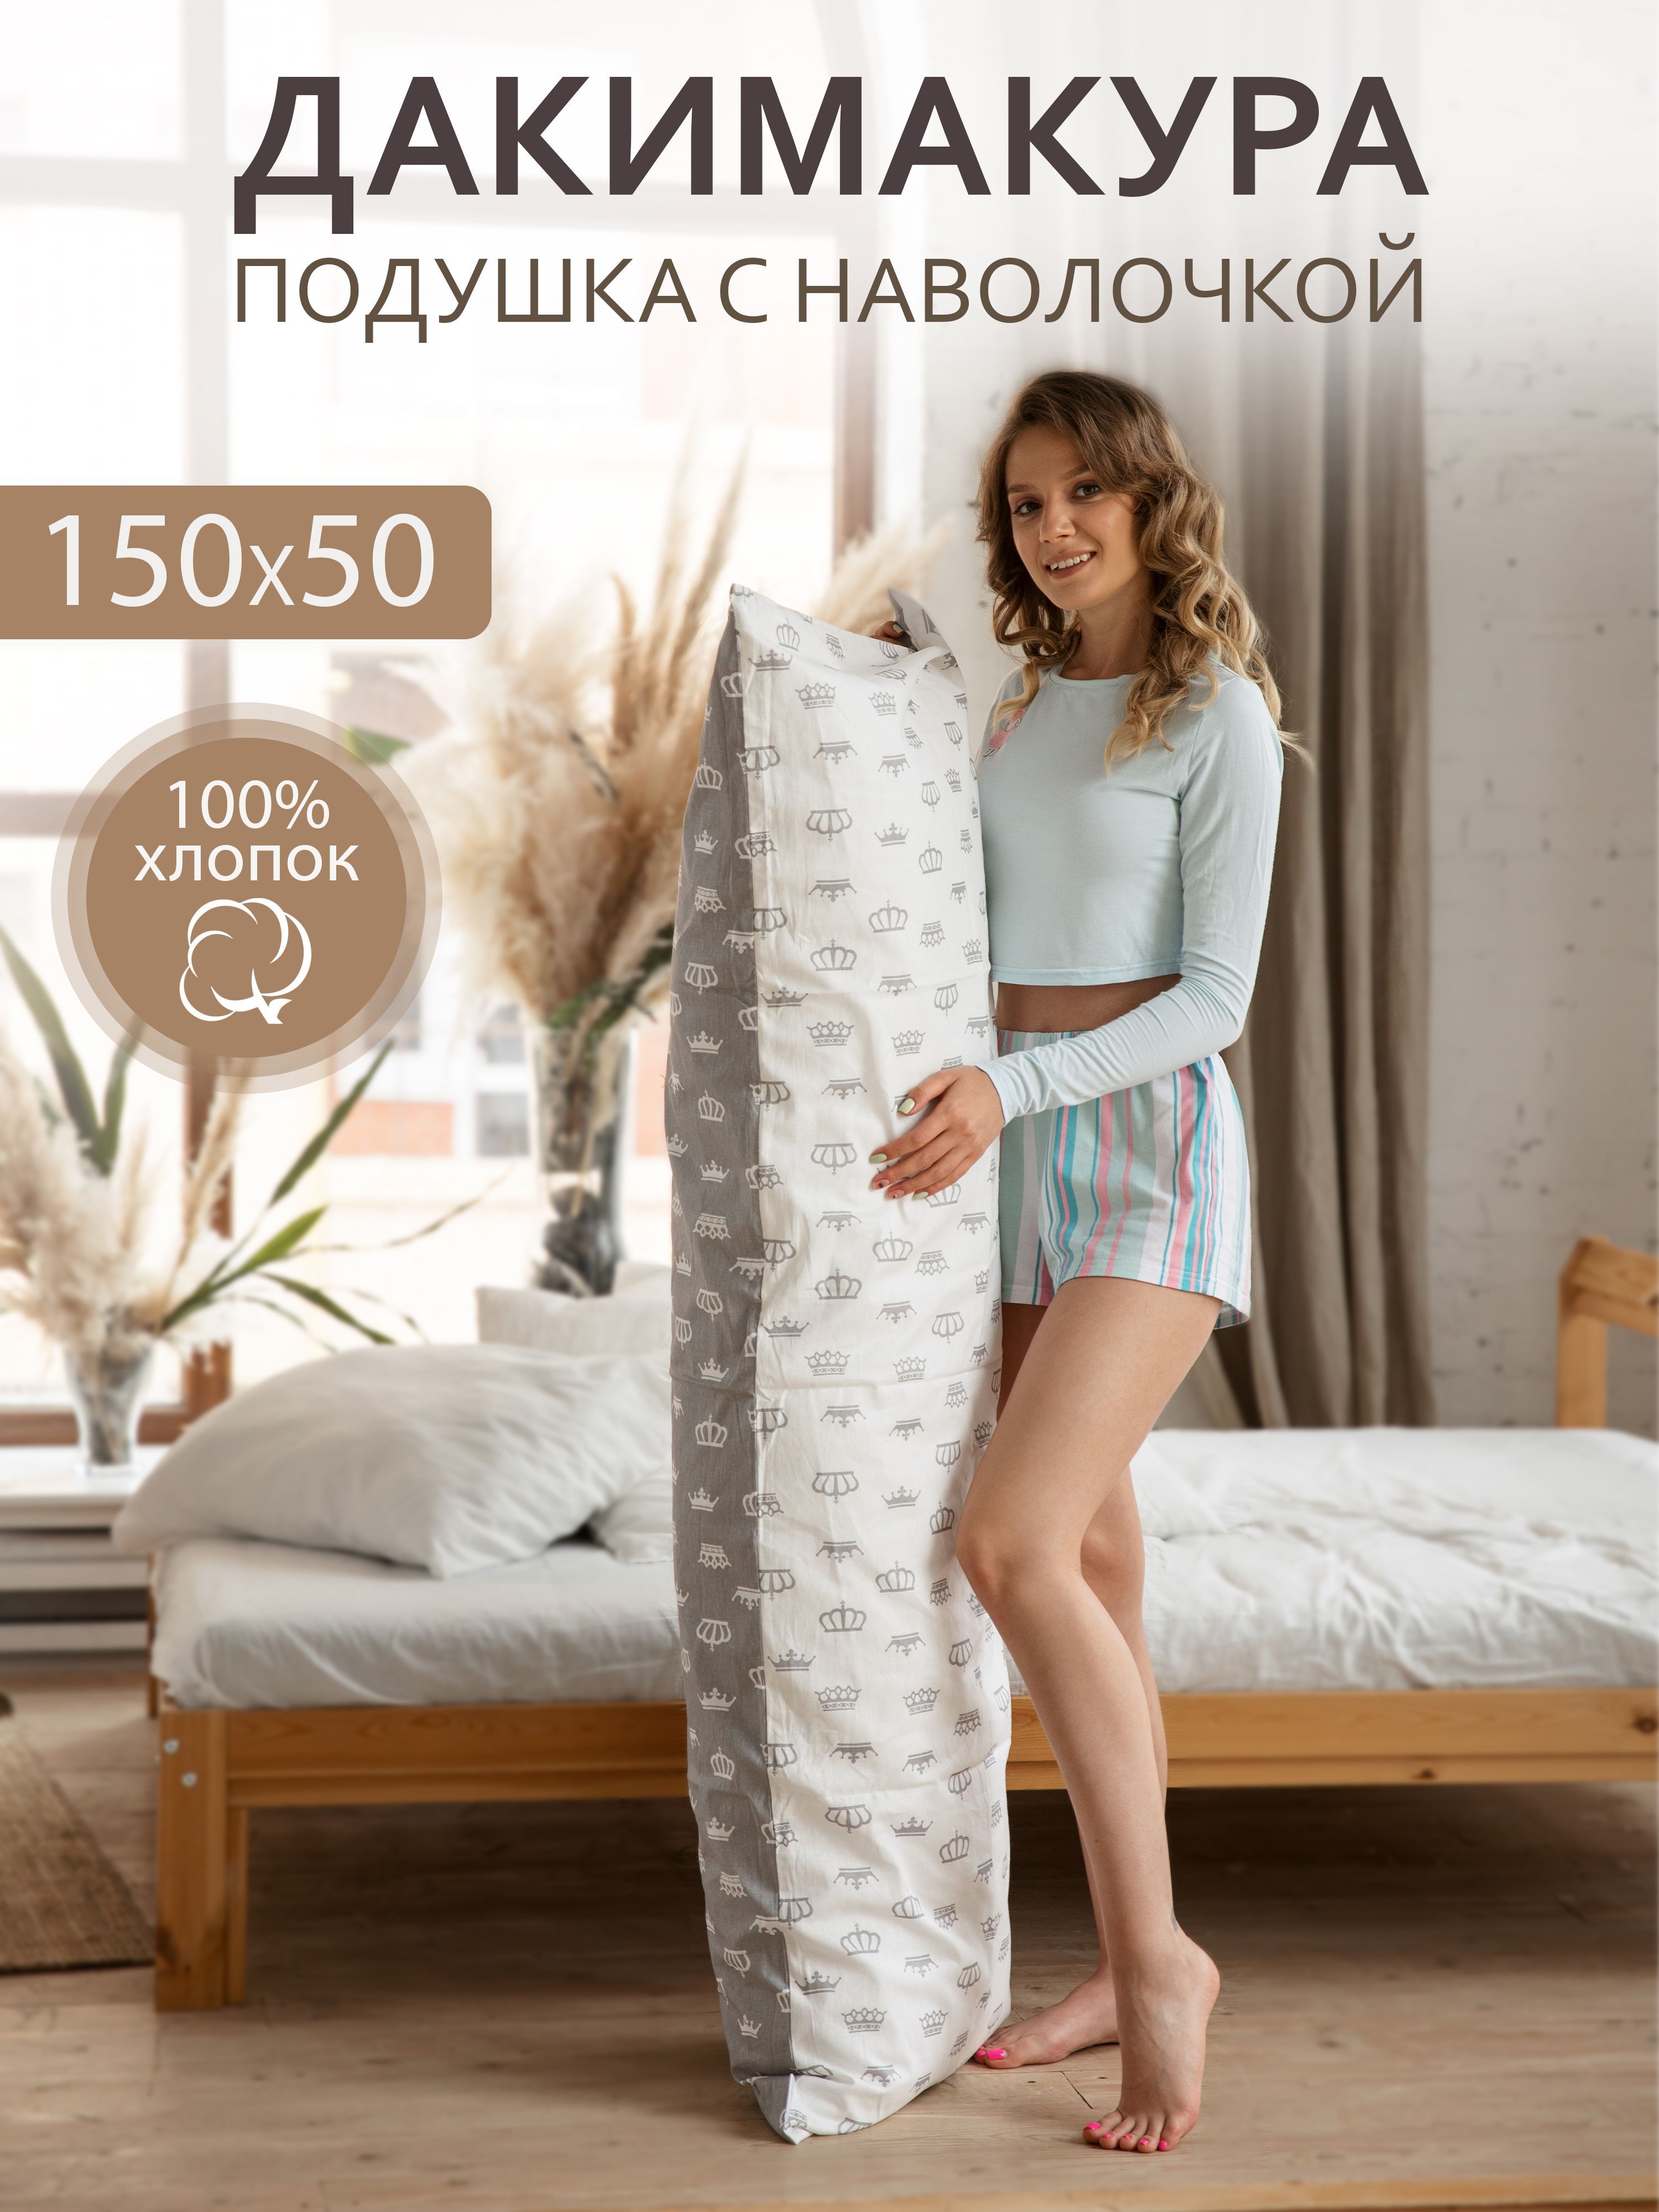 Купить подушку в Москве, цены на подушки в интернет-магазине tdksovremennik.ru